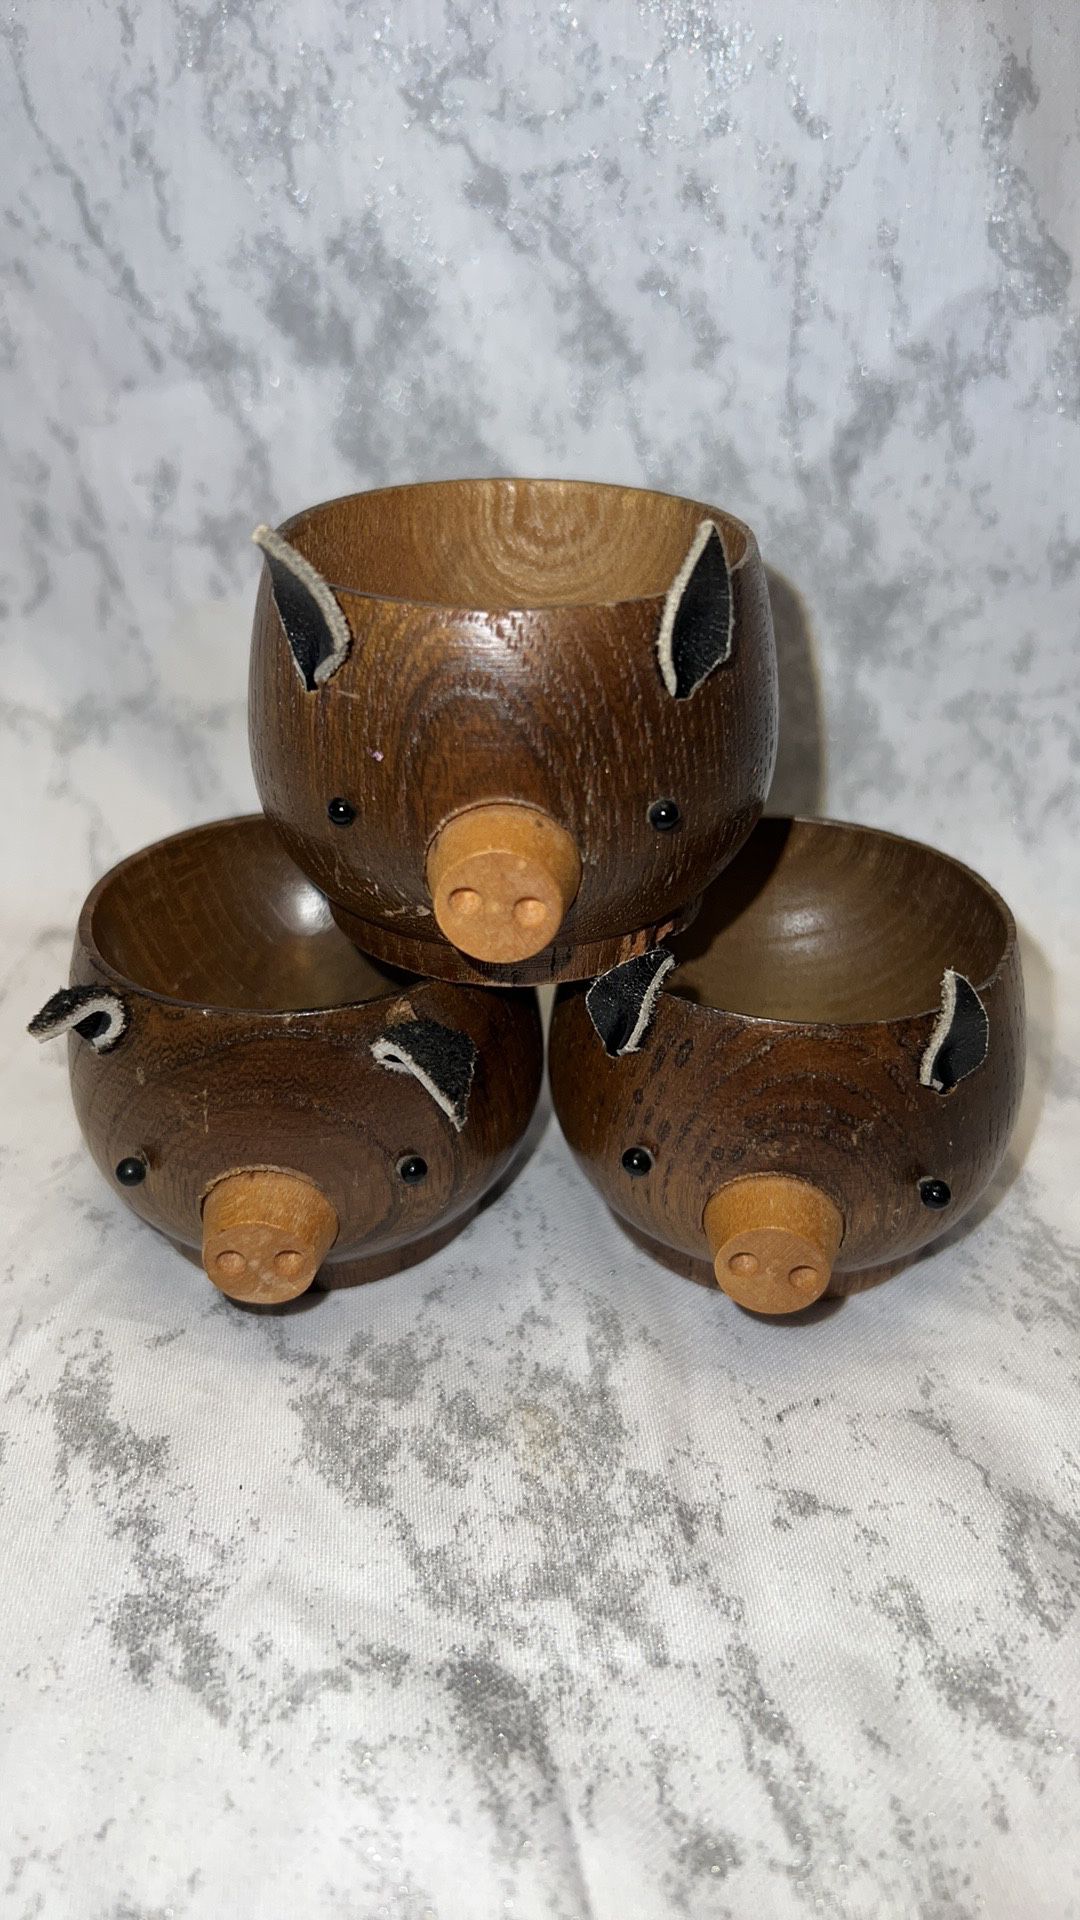 3 Little Wooden Pigs